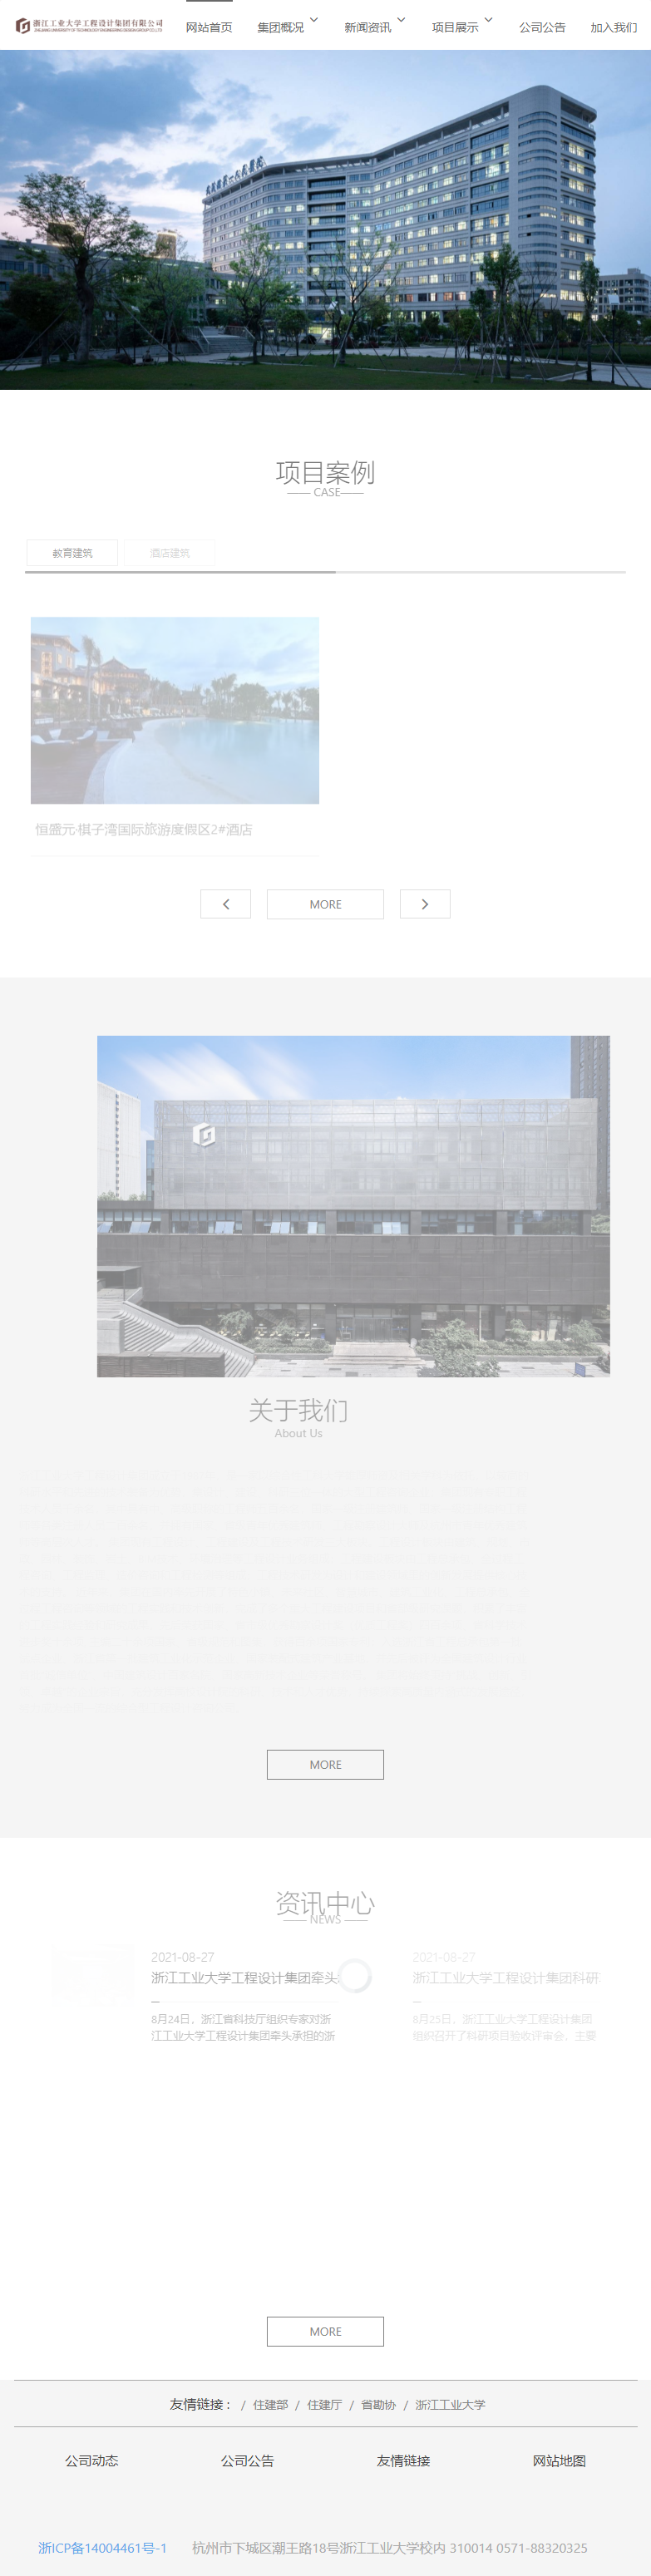 浙江工业大学工程设计集团有限公司网站案例